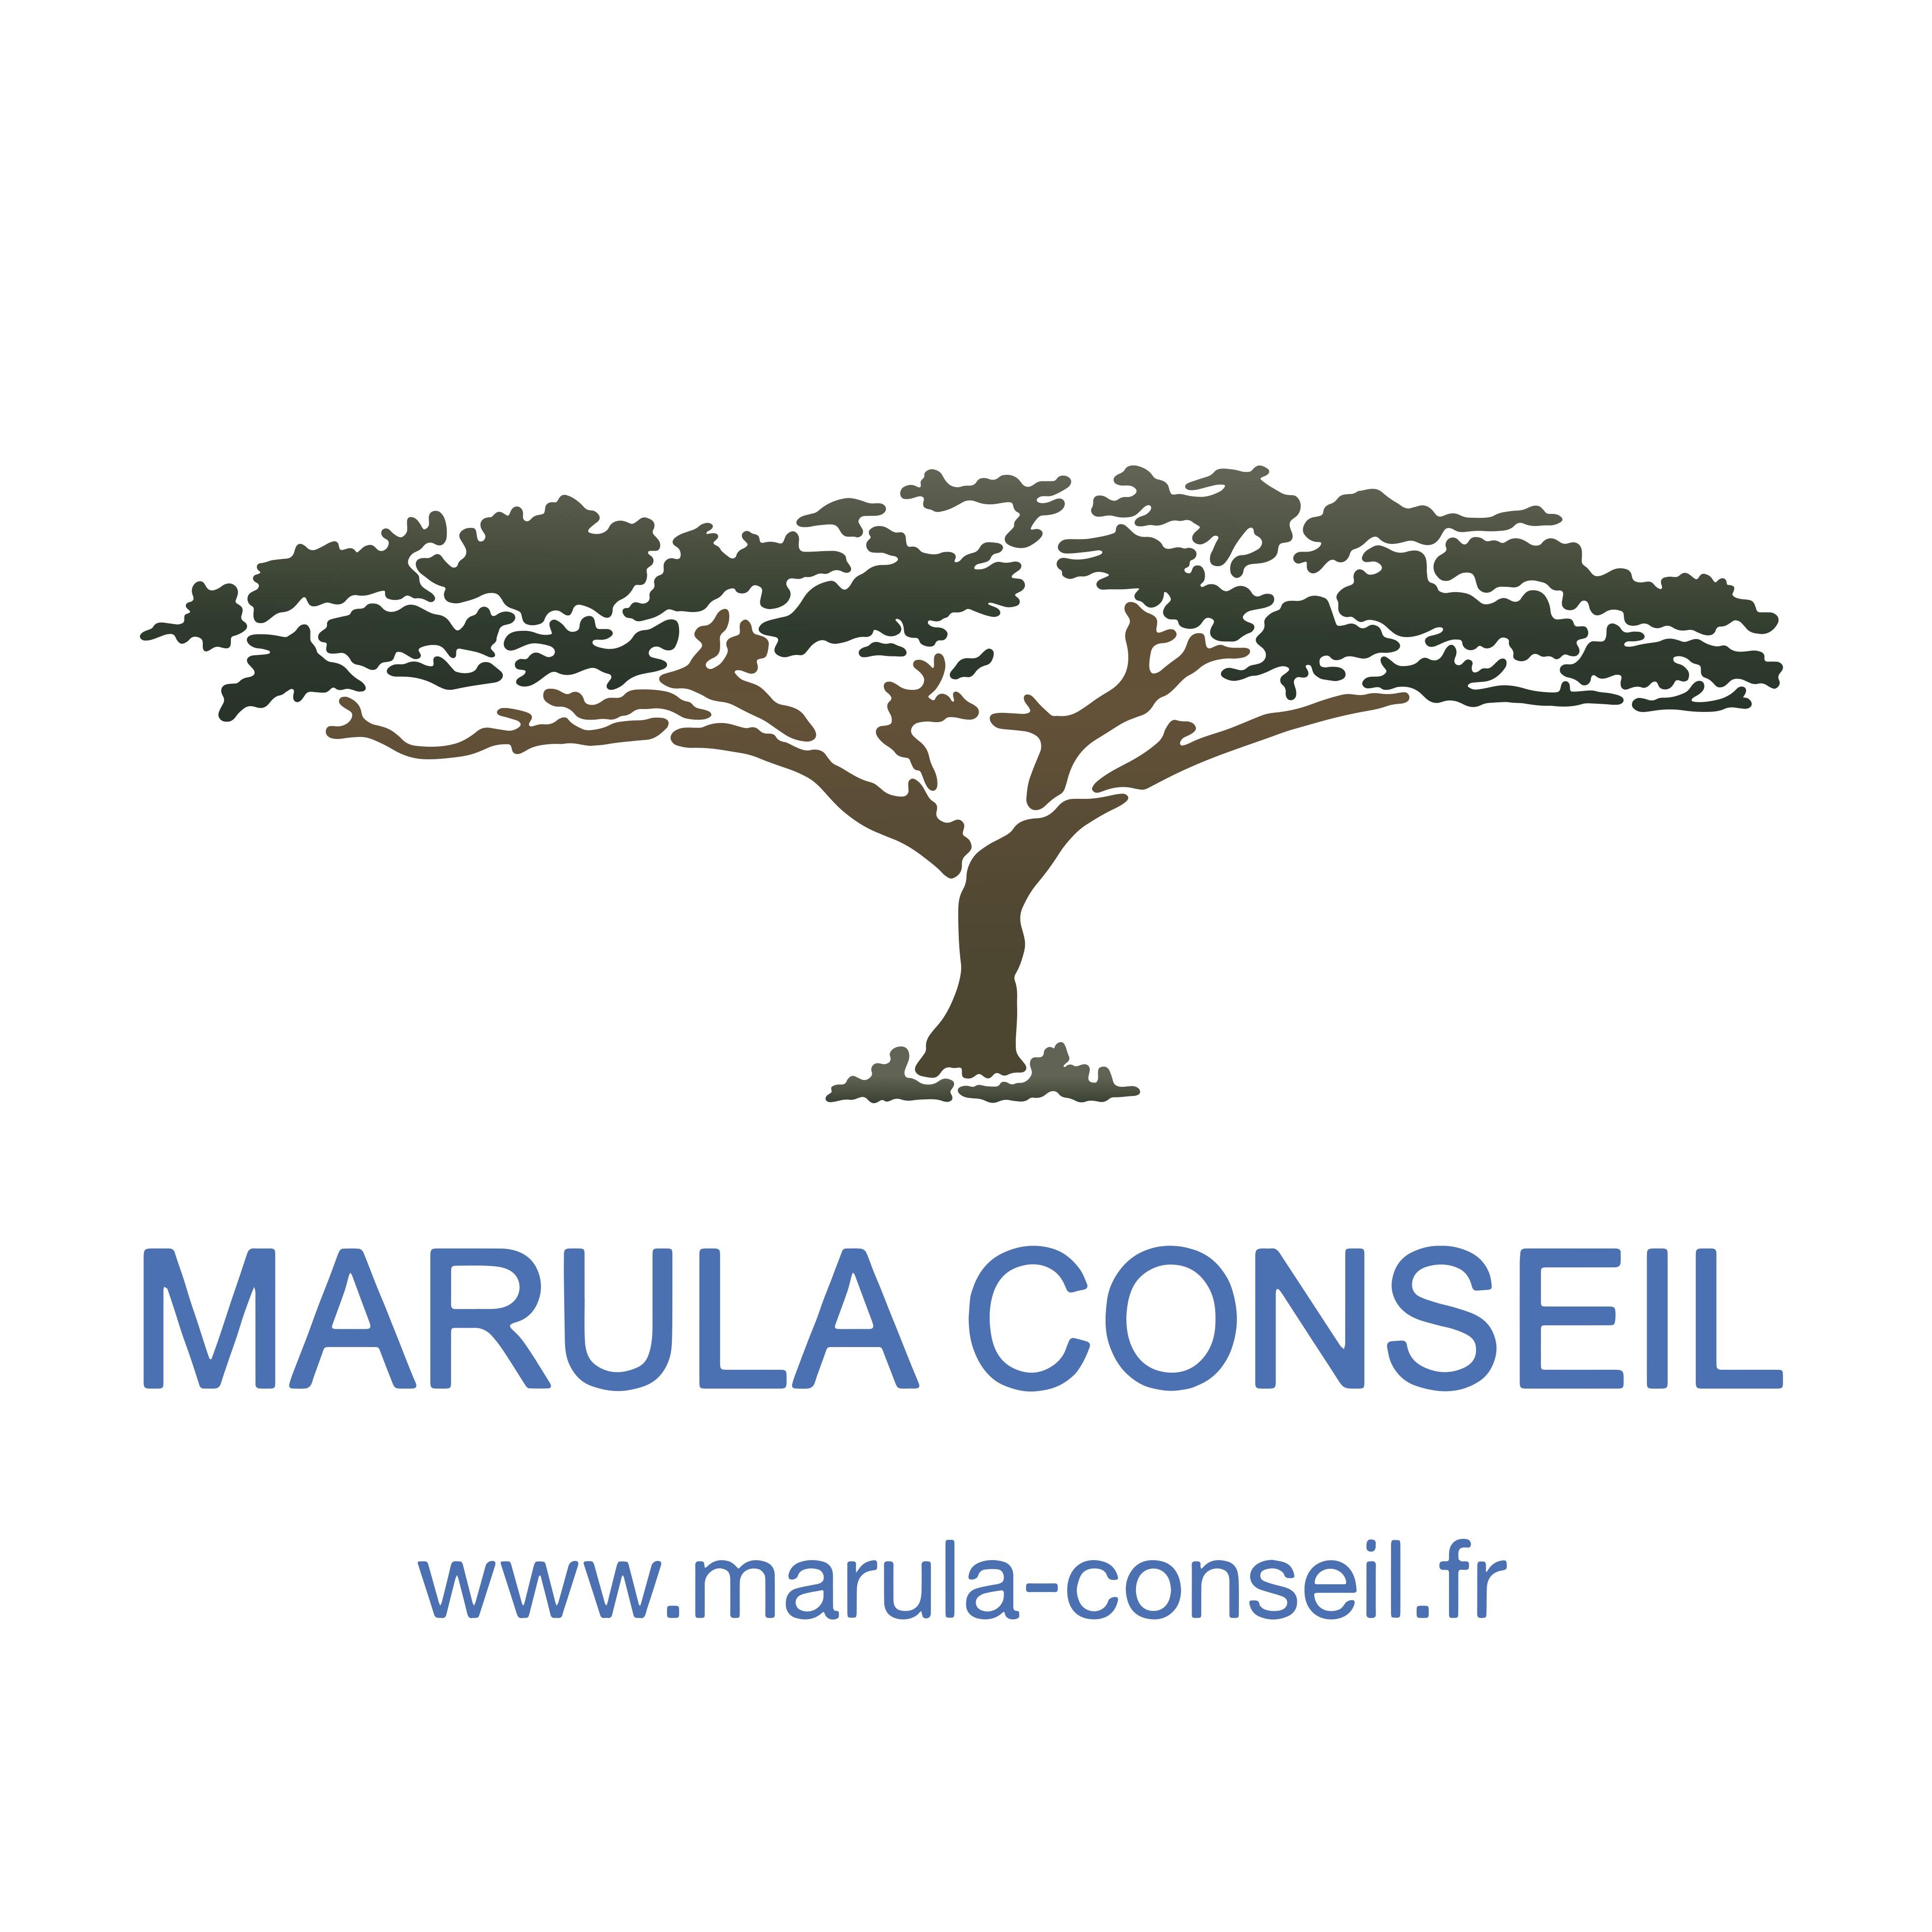 MARULA CONSEIL